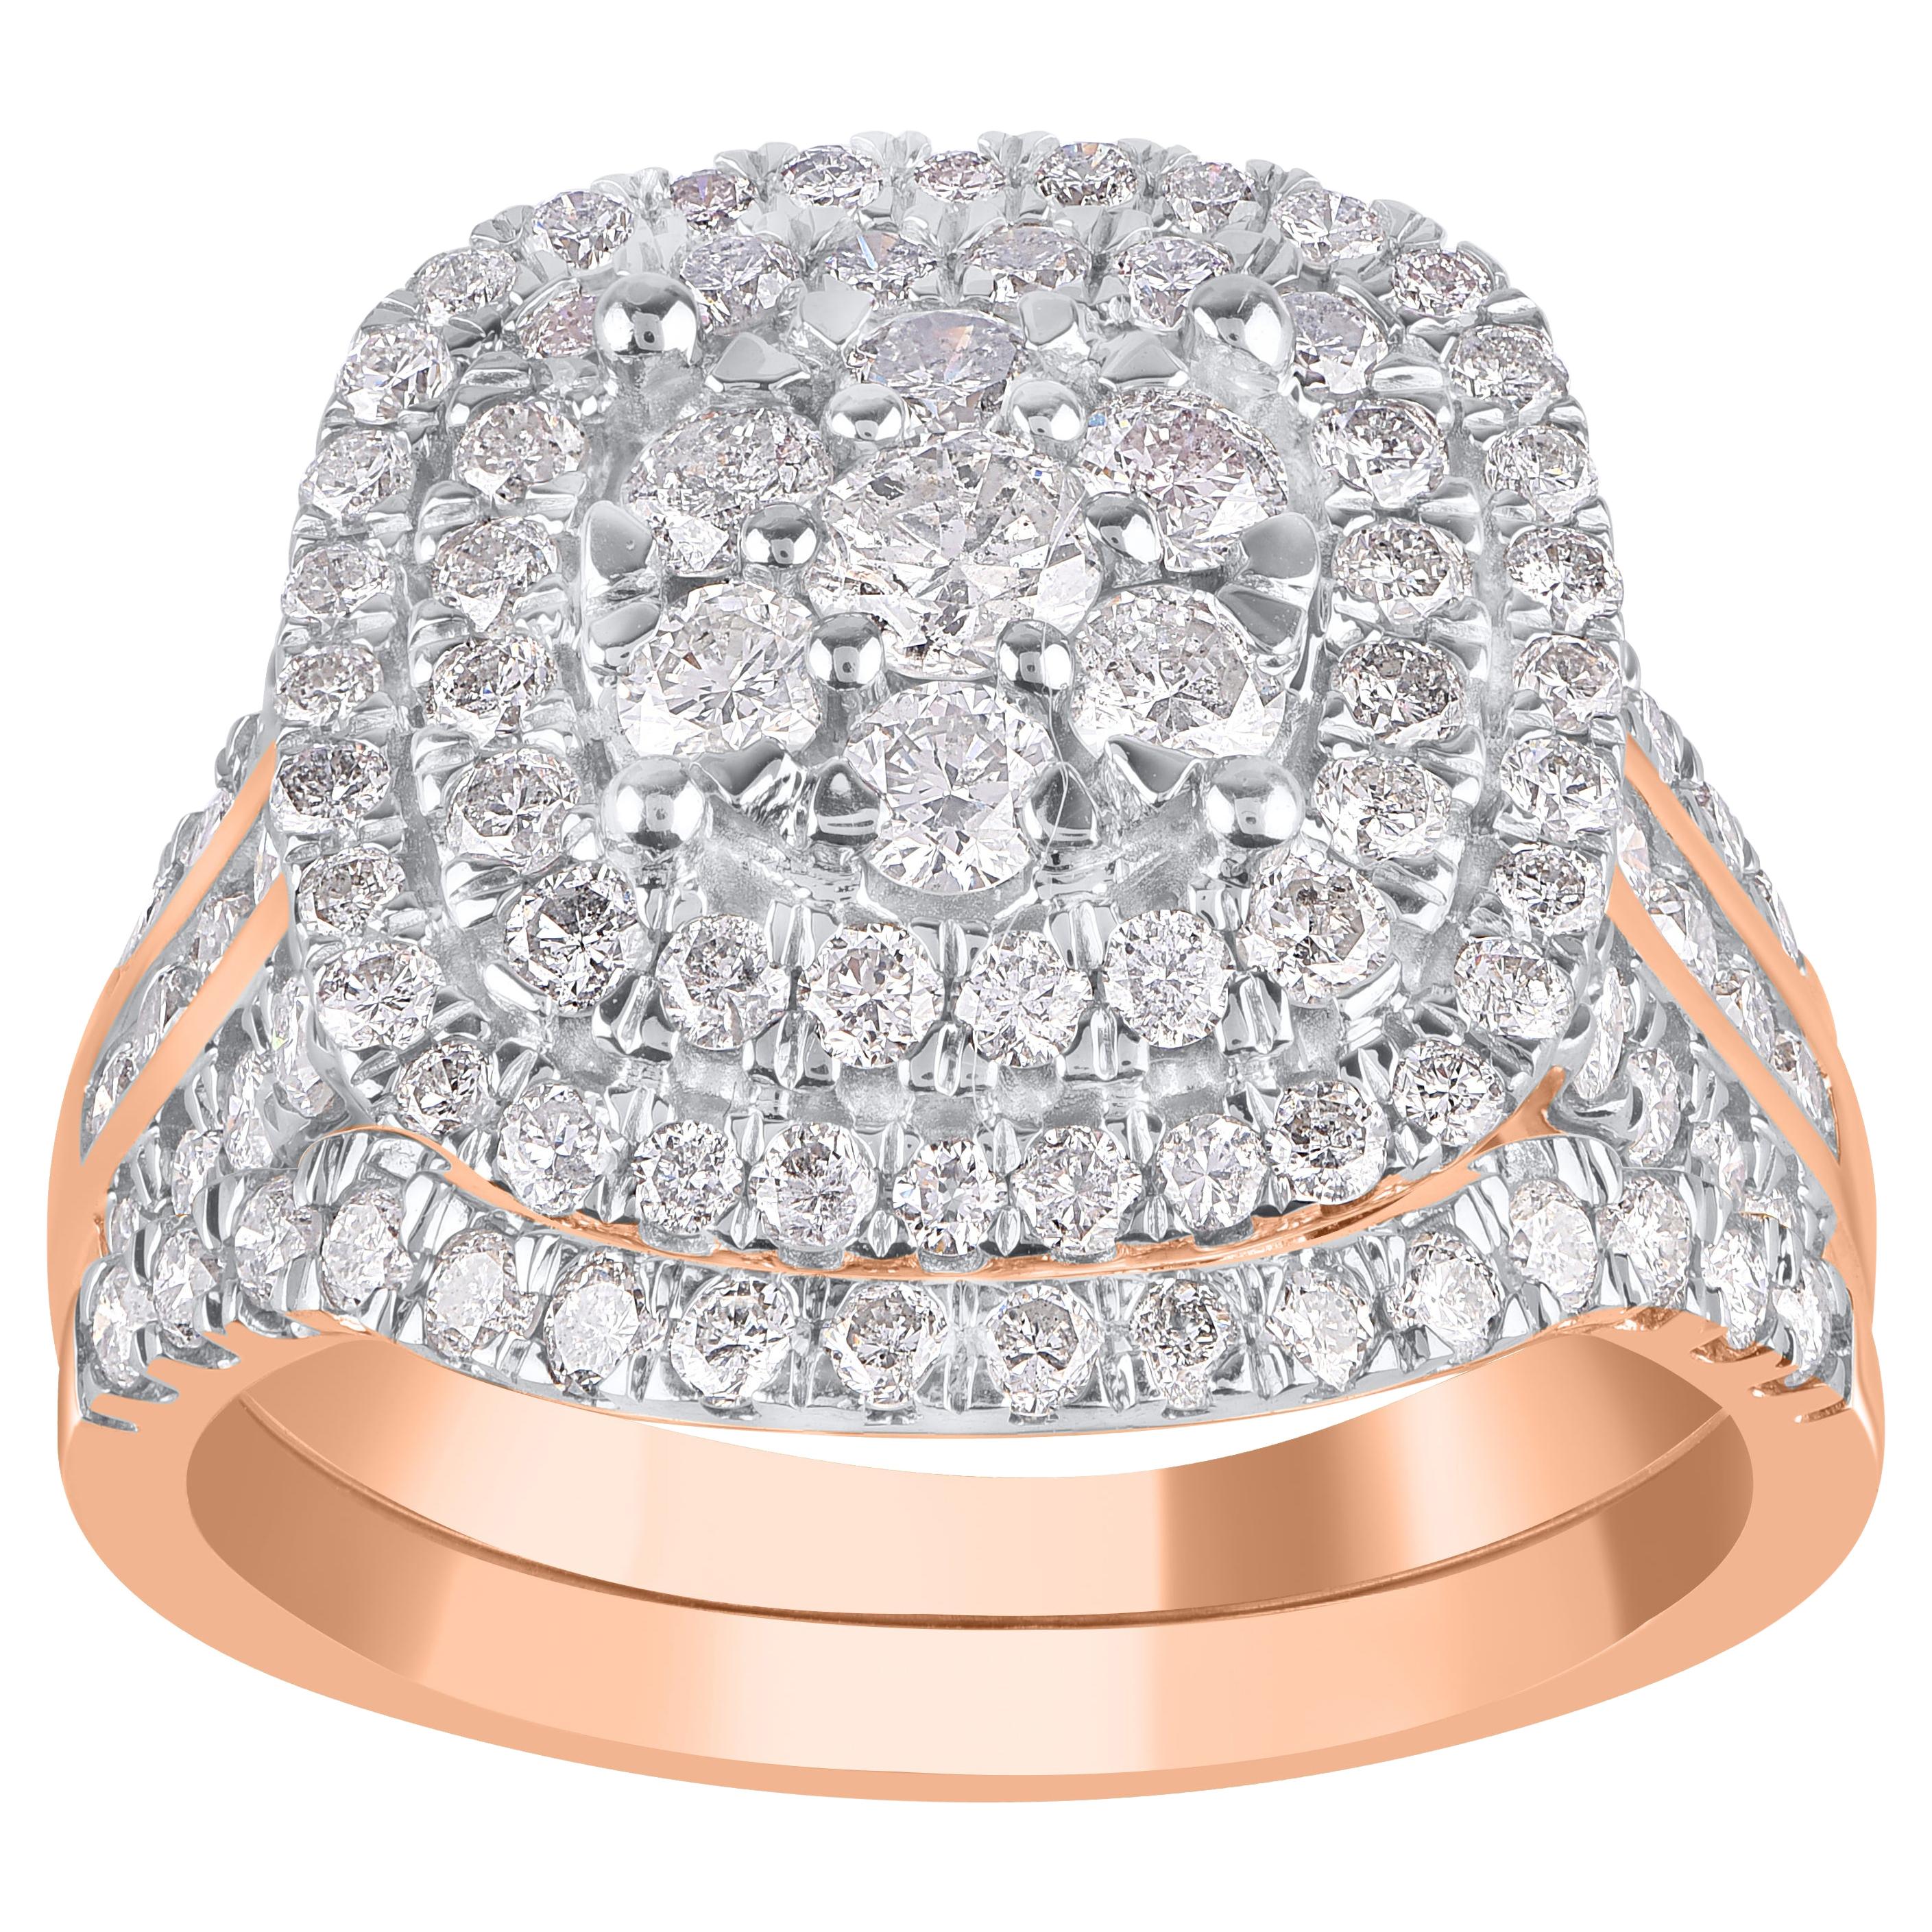 TJD 2.00 Carat Round Diamond 14 Karat Rose Gold Enchanting Ring Bridal Set